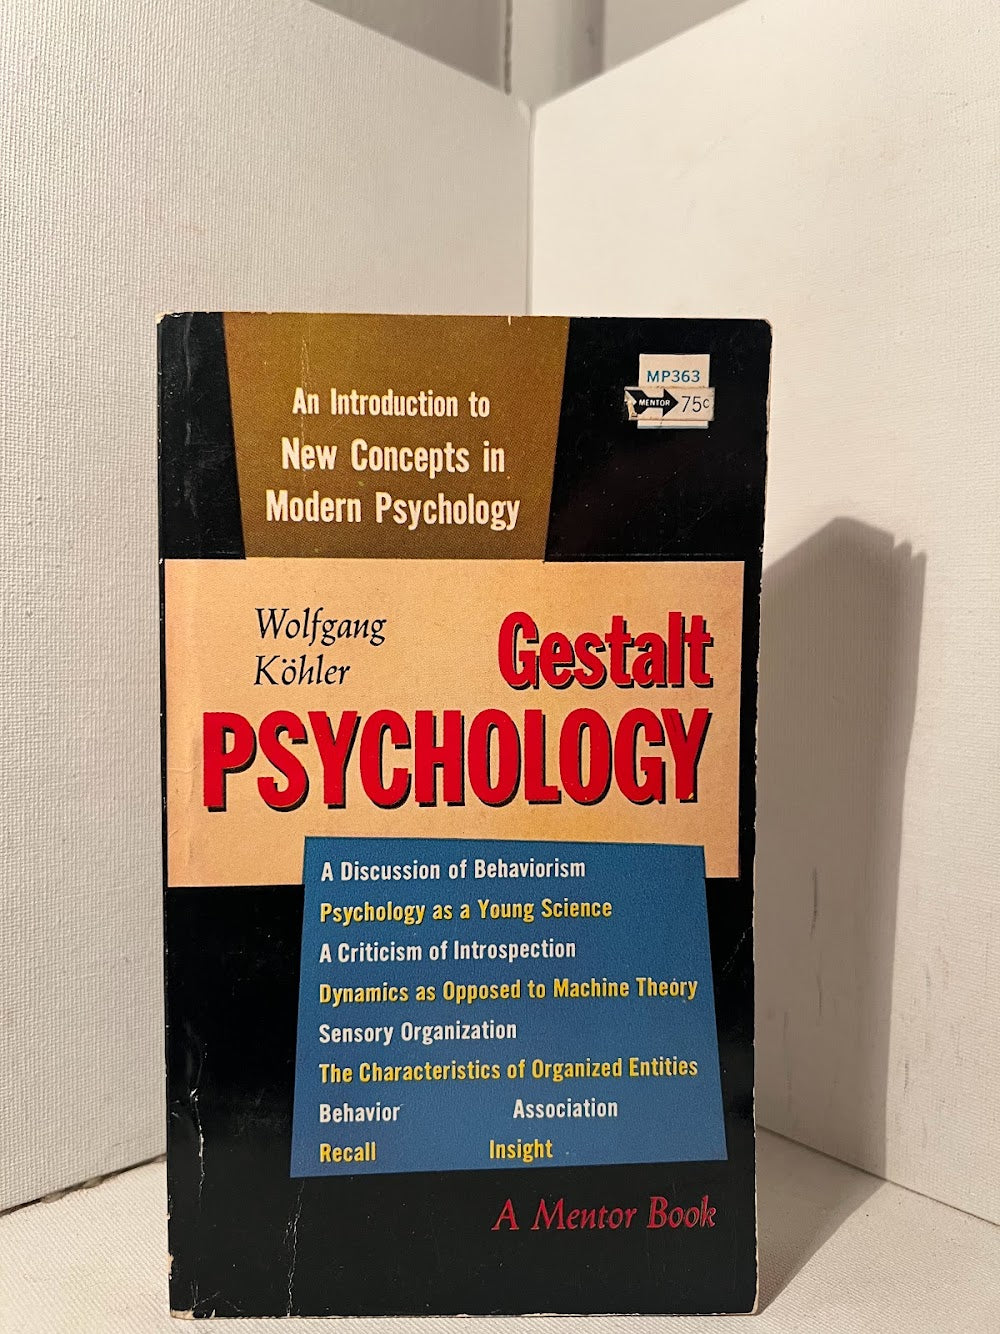 Gestalt Psychology by Wolfgang Kohler